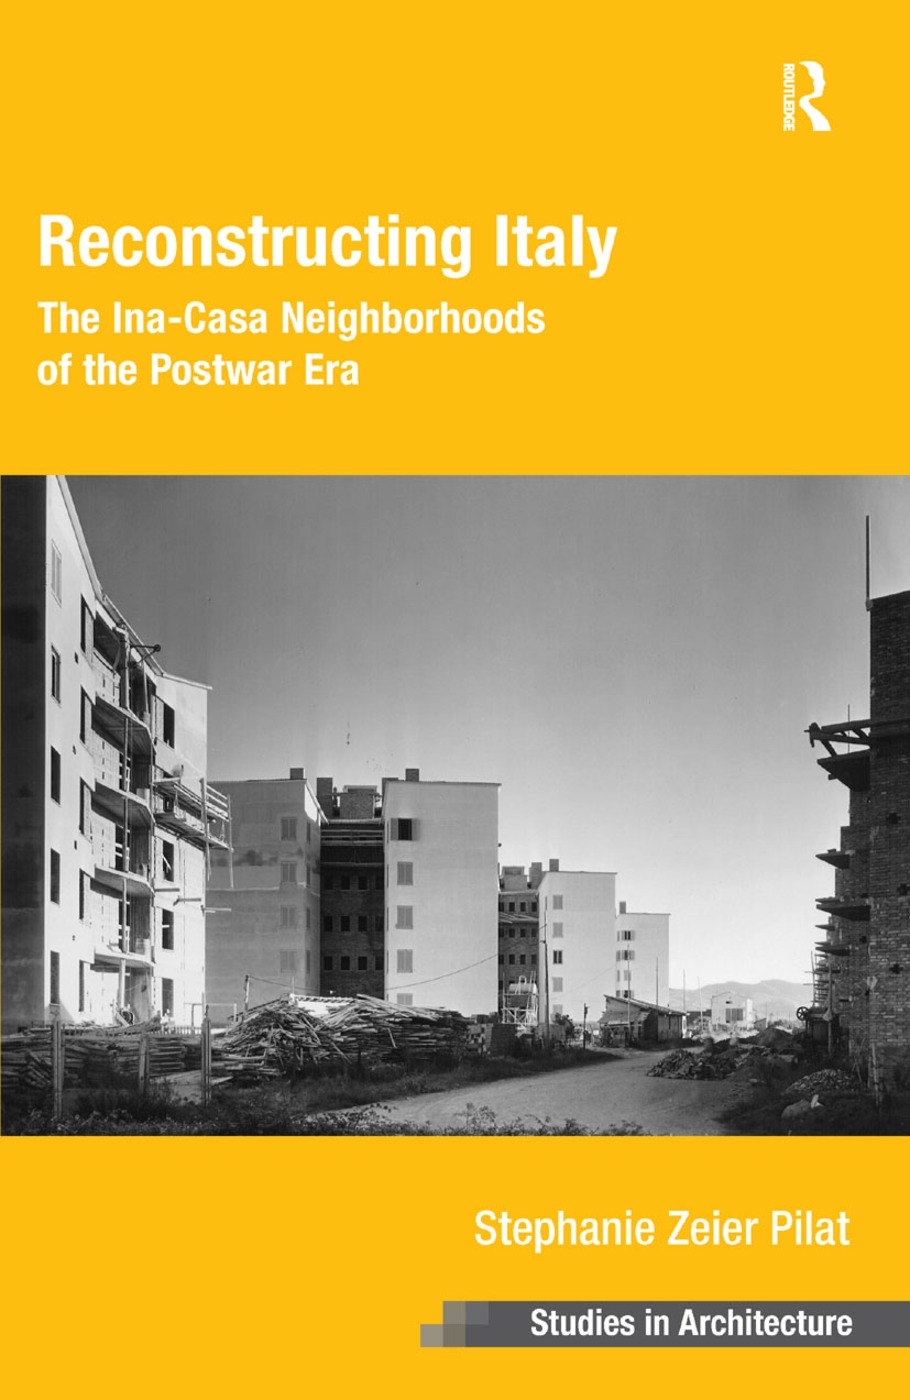 Reconstructing Italy: The Ina-Casa Neighborhoods of the Postwar Era